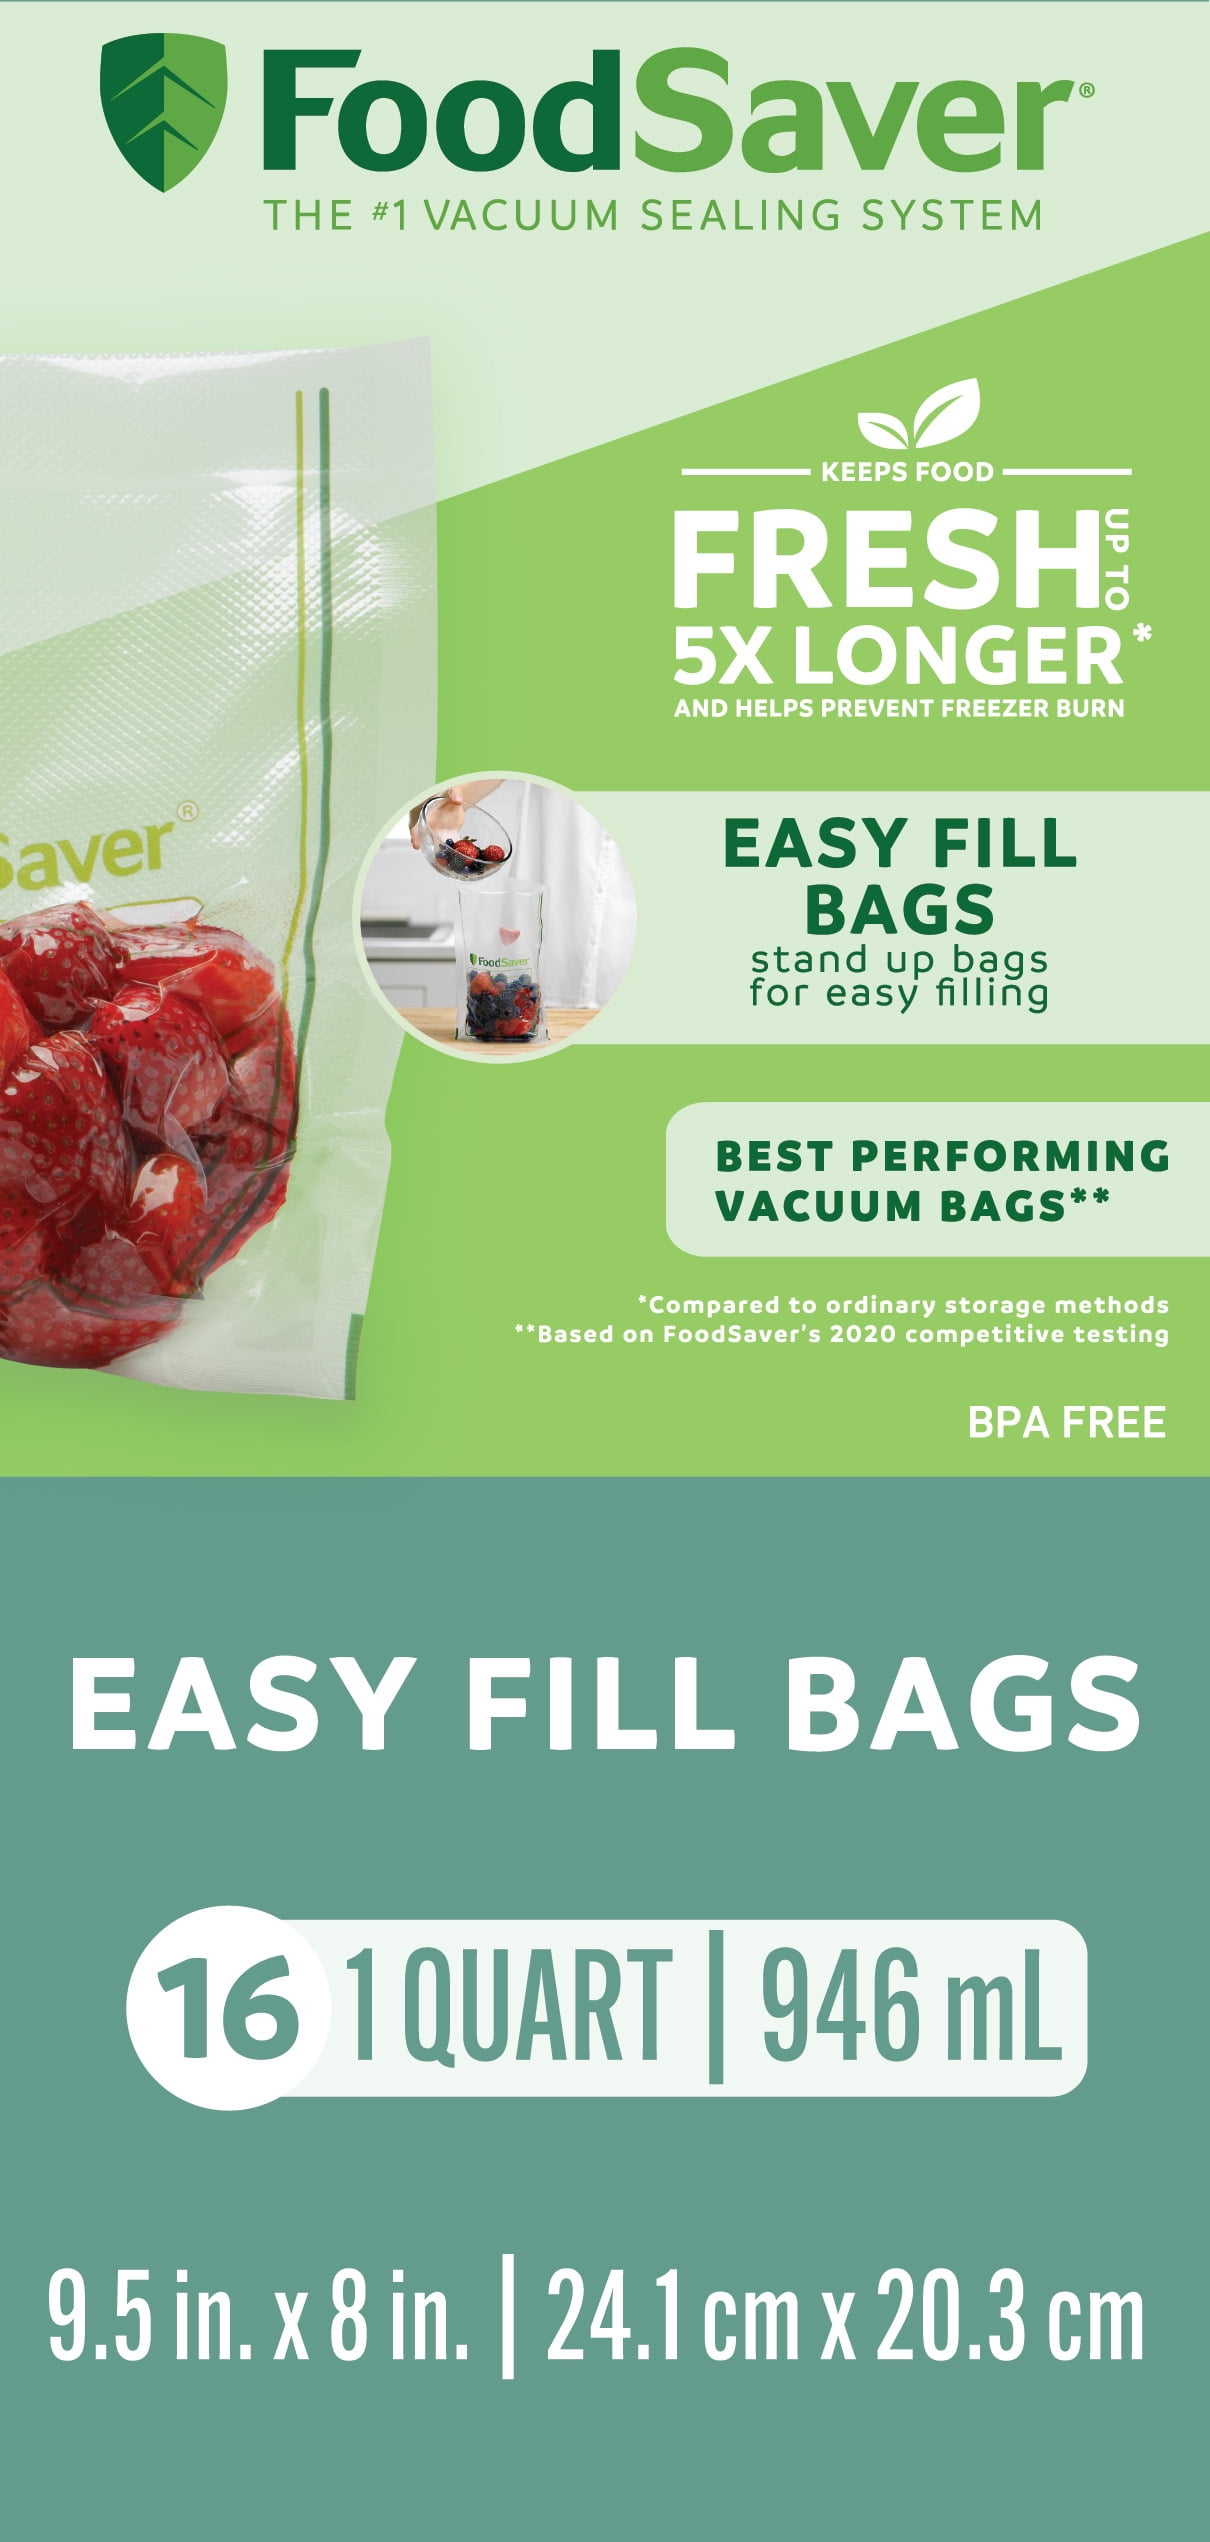 FoodSaver® Pint,Quart,Gallon Vacuum Seal Bags, Variety Pack